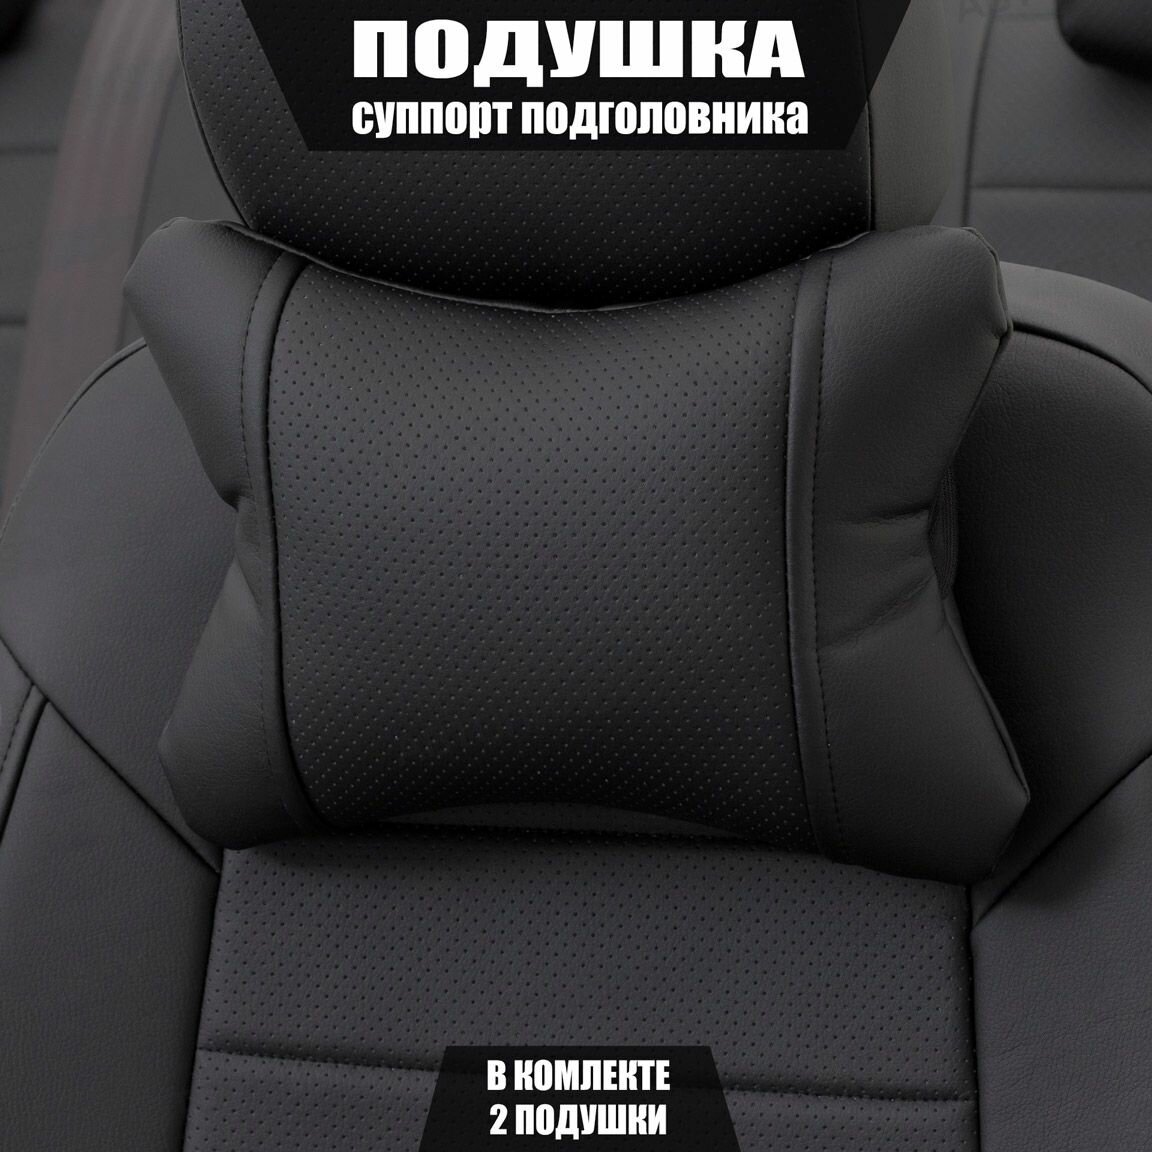 Подушки под шею (суппорт подголовника) для Хендай Элантра (2018 - 2020) седан / Hyundai Elantra Экокожа 2 подушки Черный